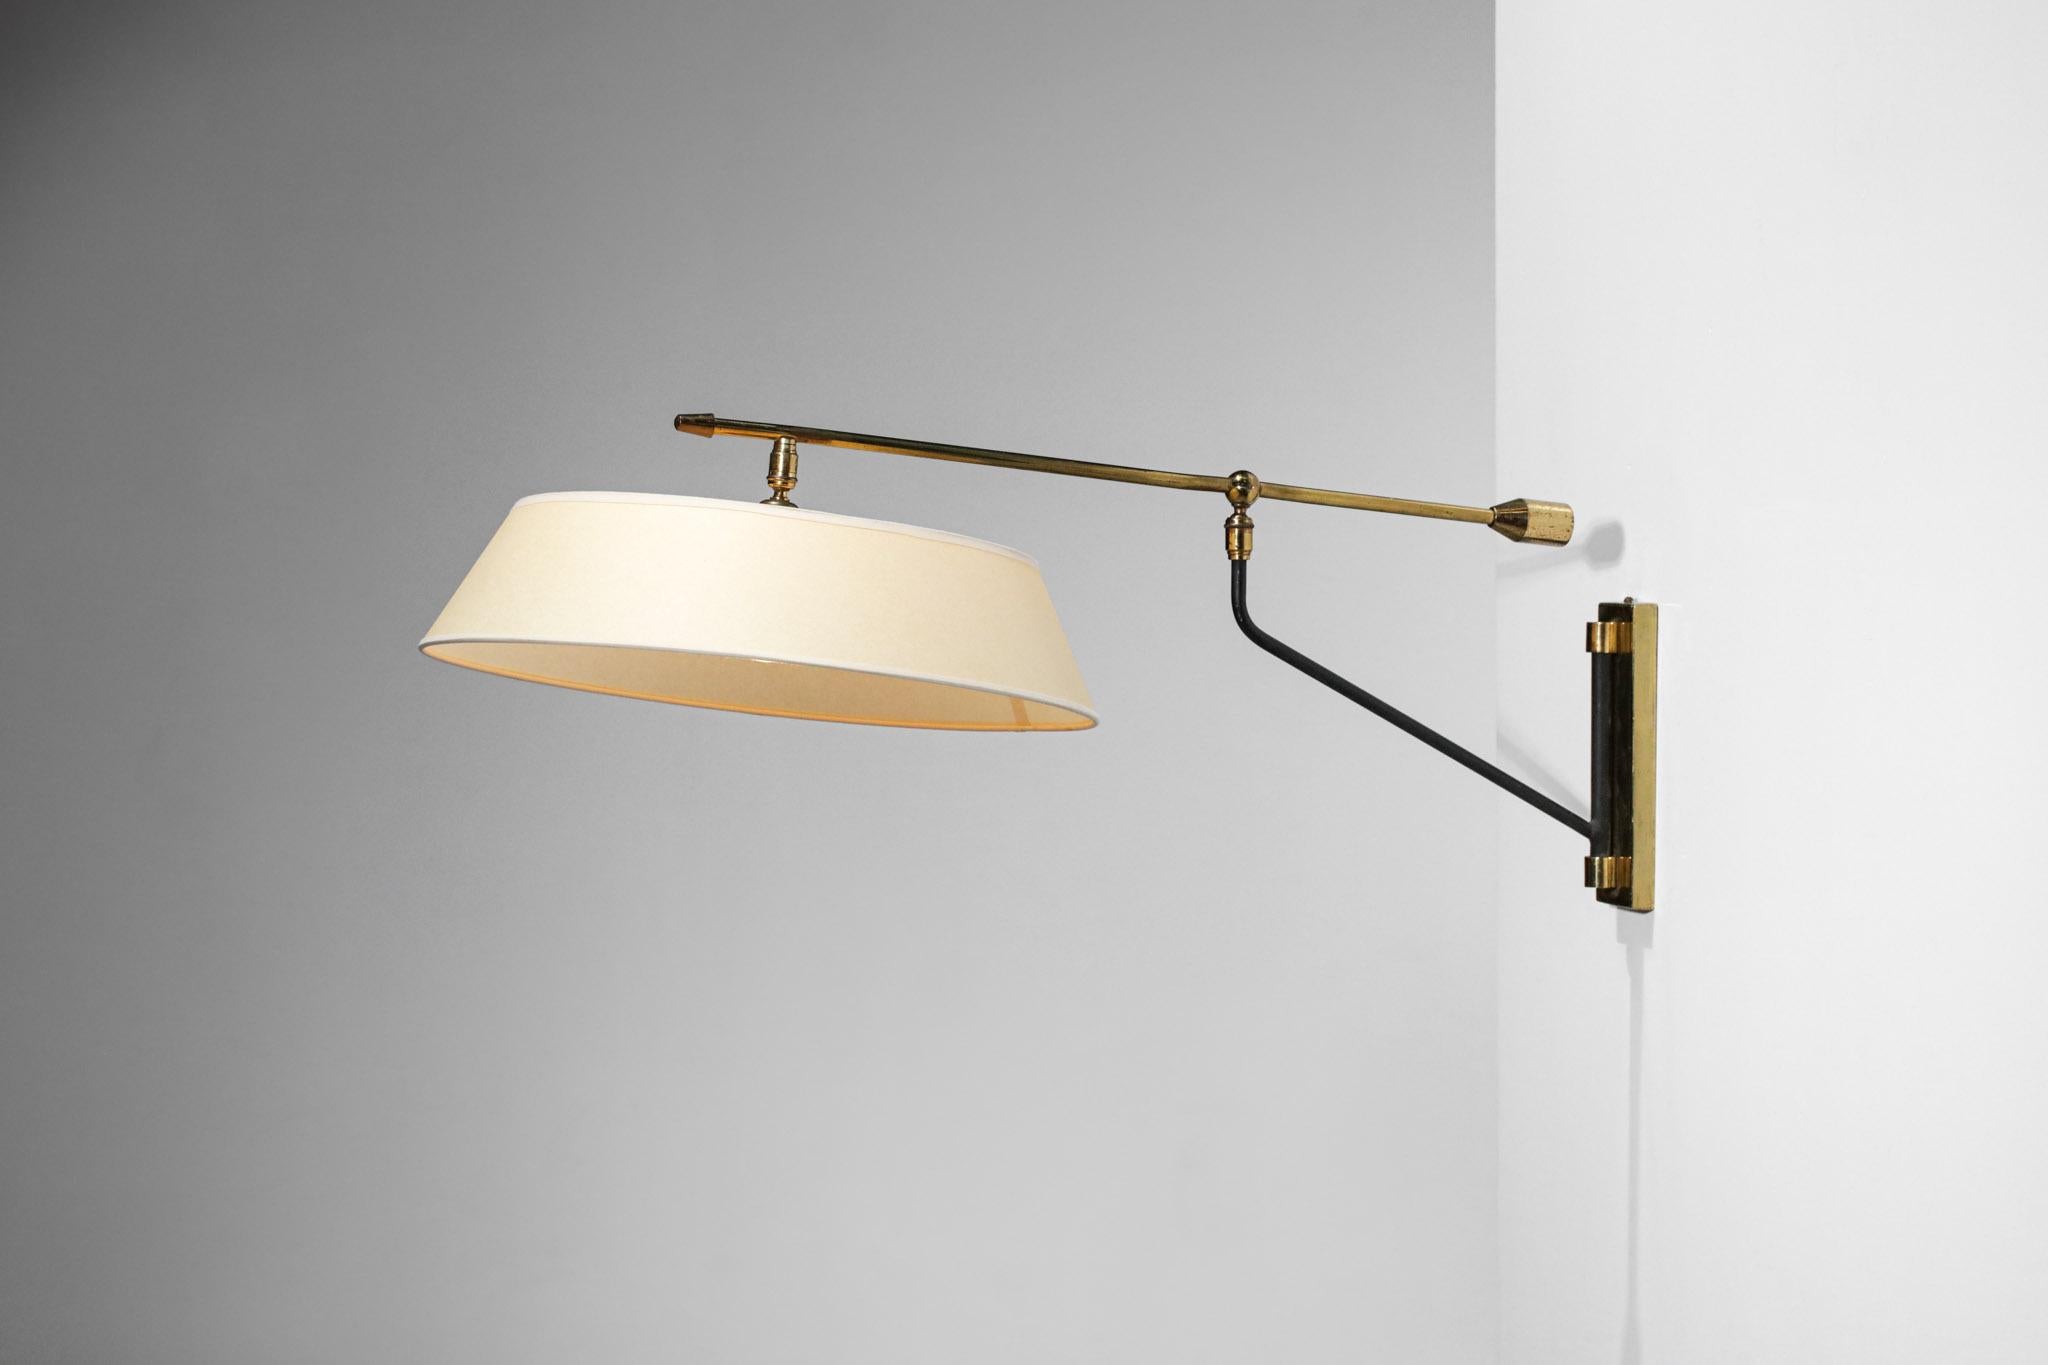 Mid-Century Modern Wall Light Maison Arlus 60's Vintage Pendulum Brass